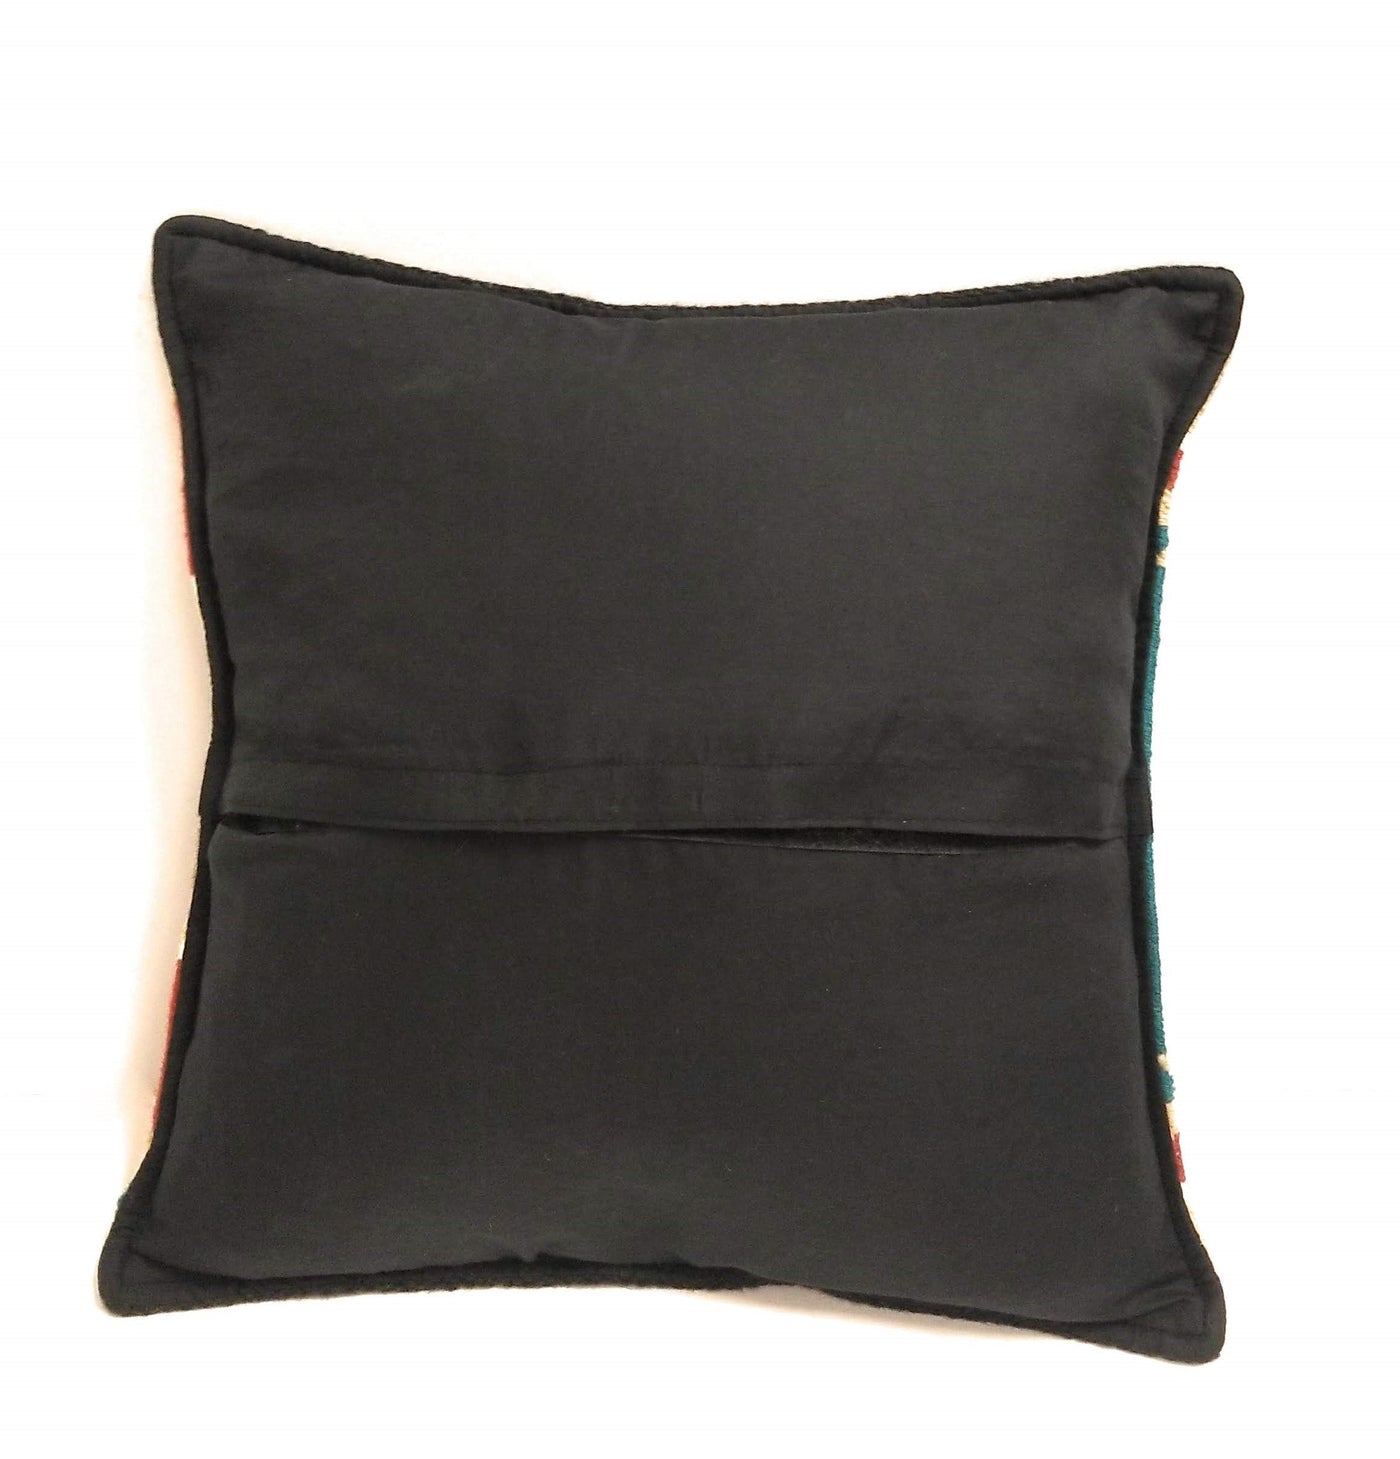 18x18 OUTDOOR Pillow Insert, 18x18 Outdoor Pillow Forms, 18x18 OUTDOOR  Pillow Stuffers 